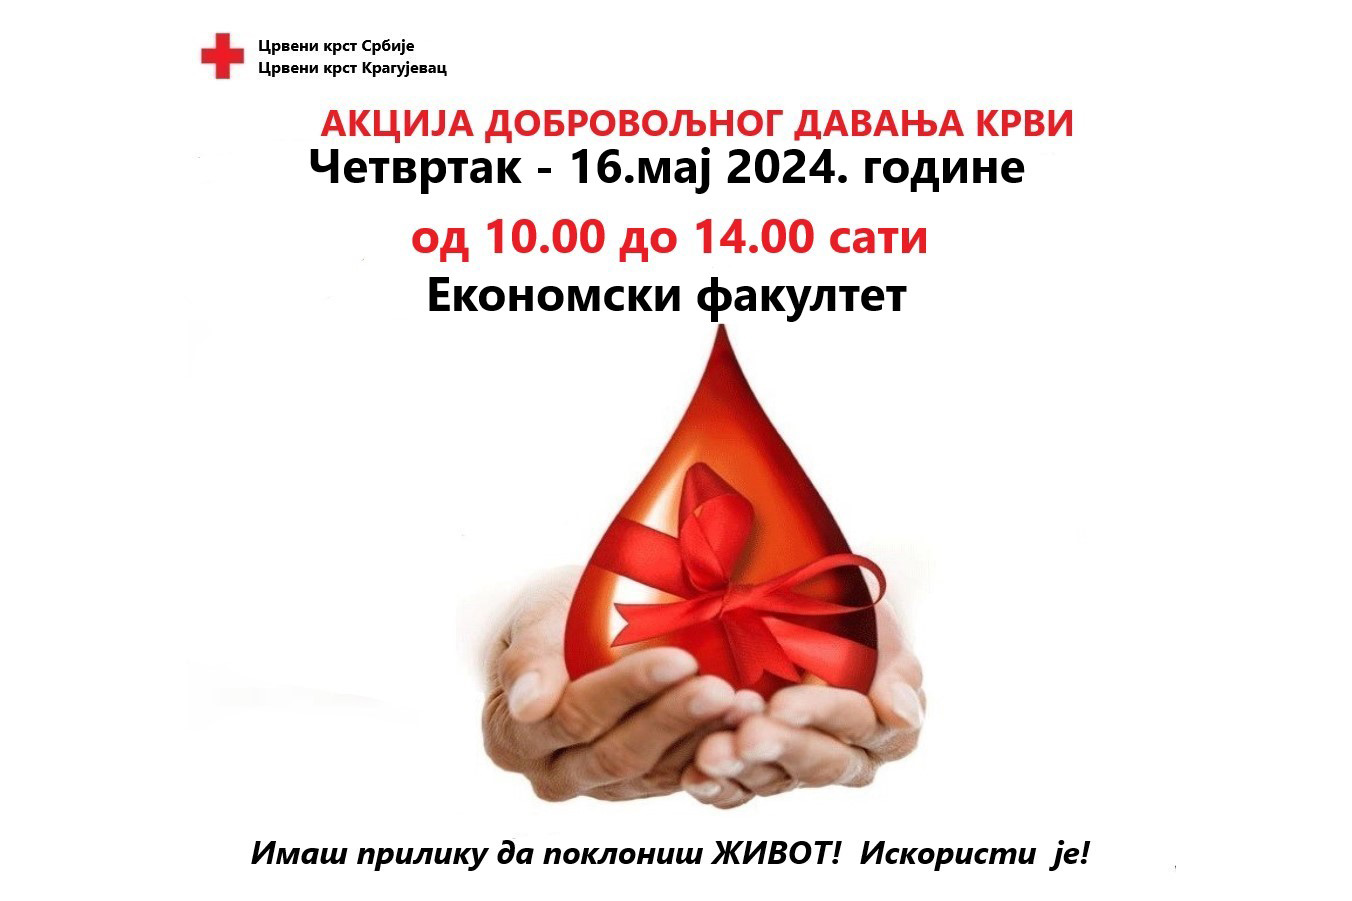 Акција добровољног давања крви на Економском факултету